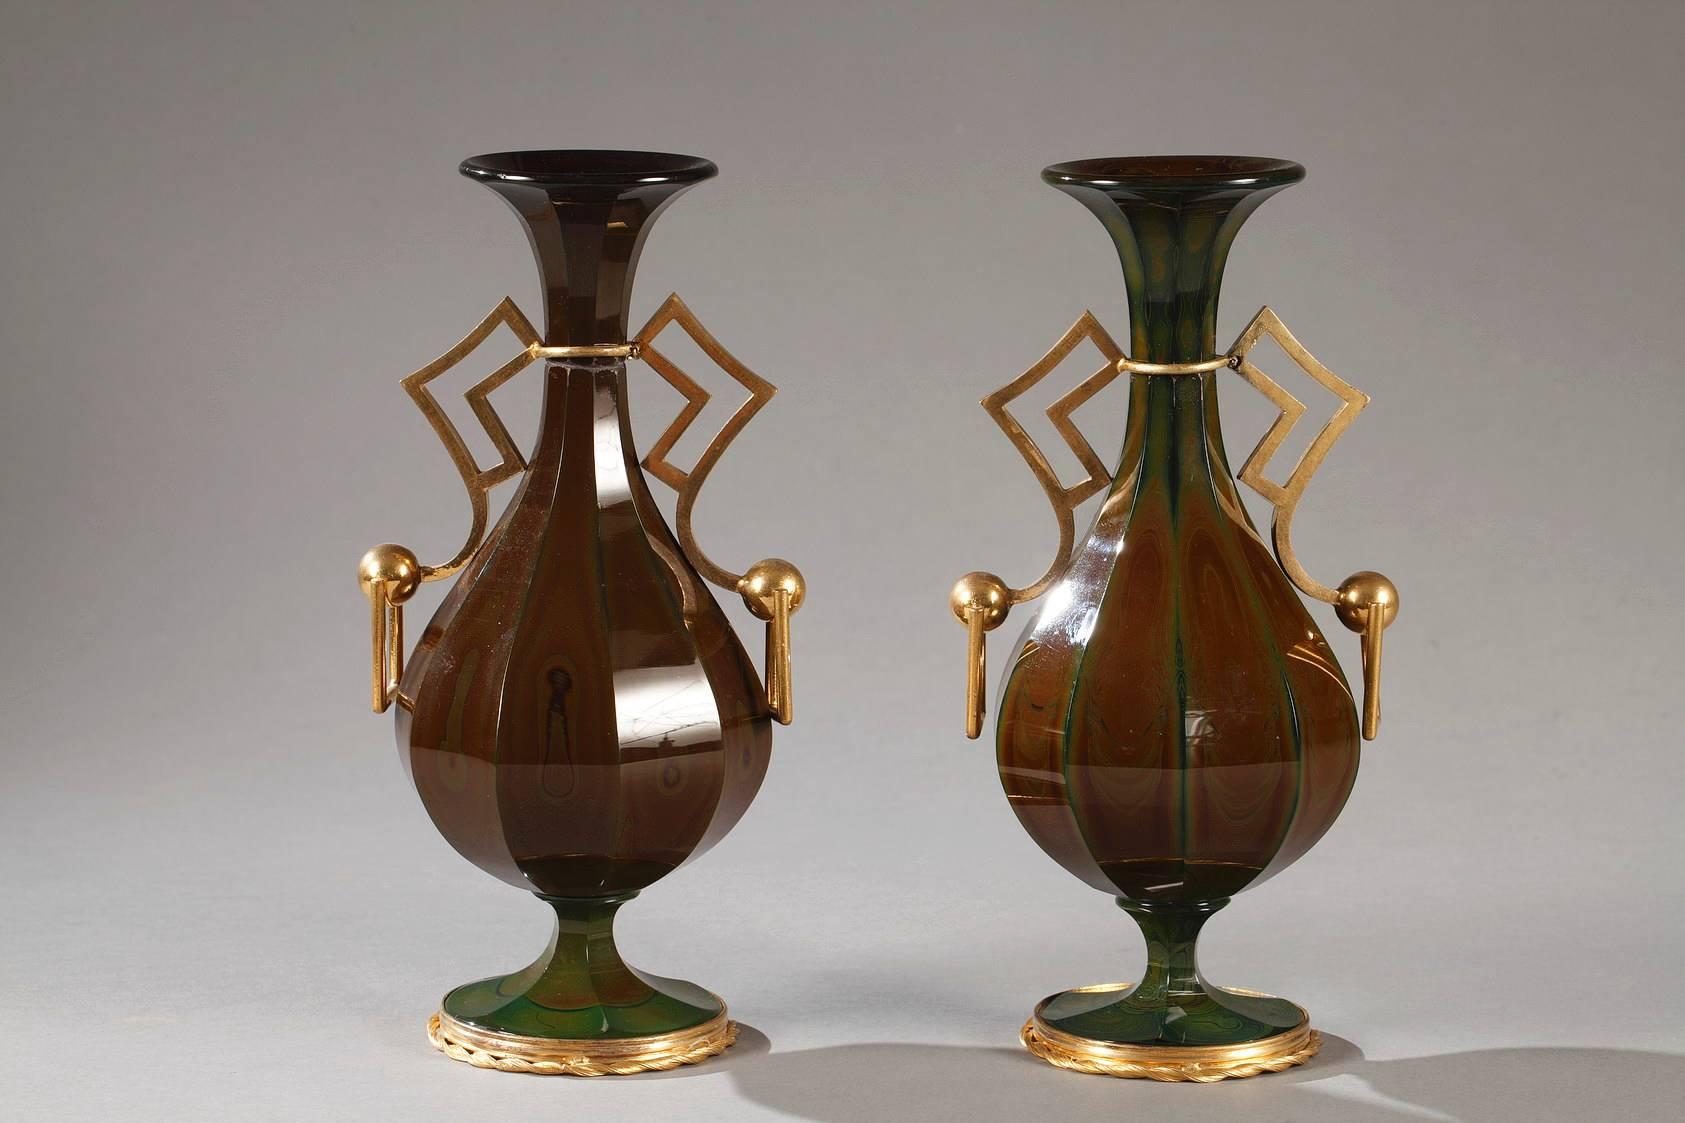 Rare paire de vases en verre lithyalin de Bohème, aux sections angulaires et aux montures en bronze doré. Chacun des vases vert foncé et marbré repose sur un socle entouré d'un ruban spiralé en bronze doré. Les poignées angulaires, simples mais